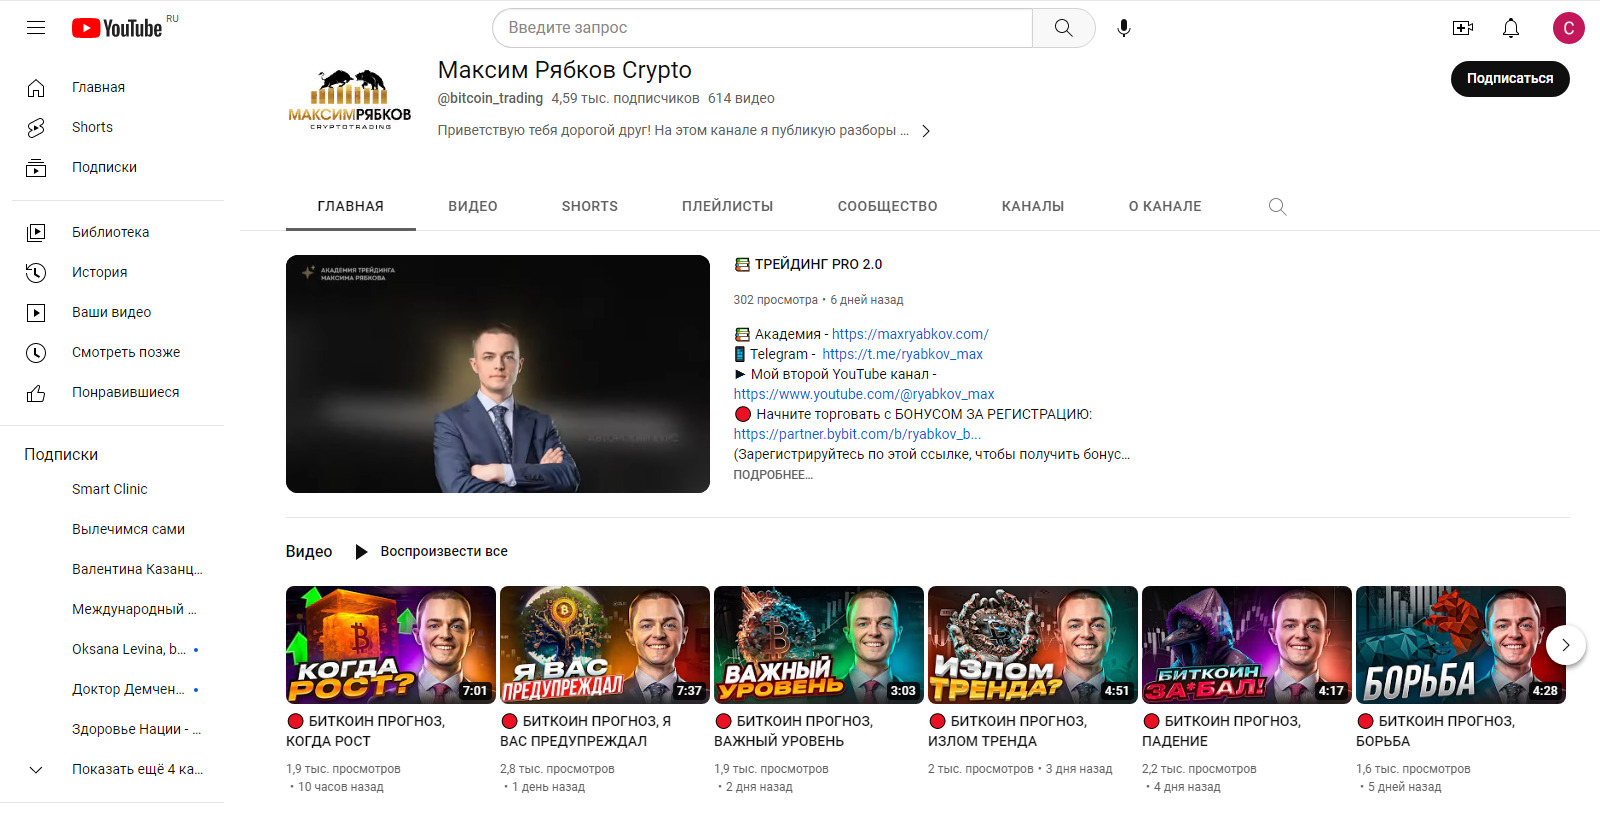 Канал YouTube Максима Рябкова